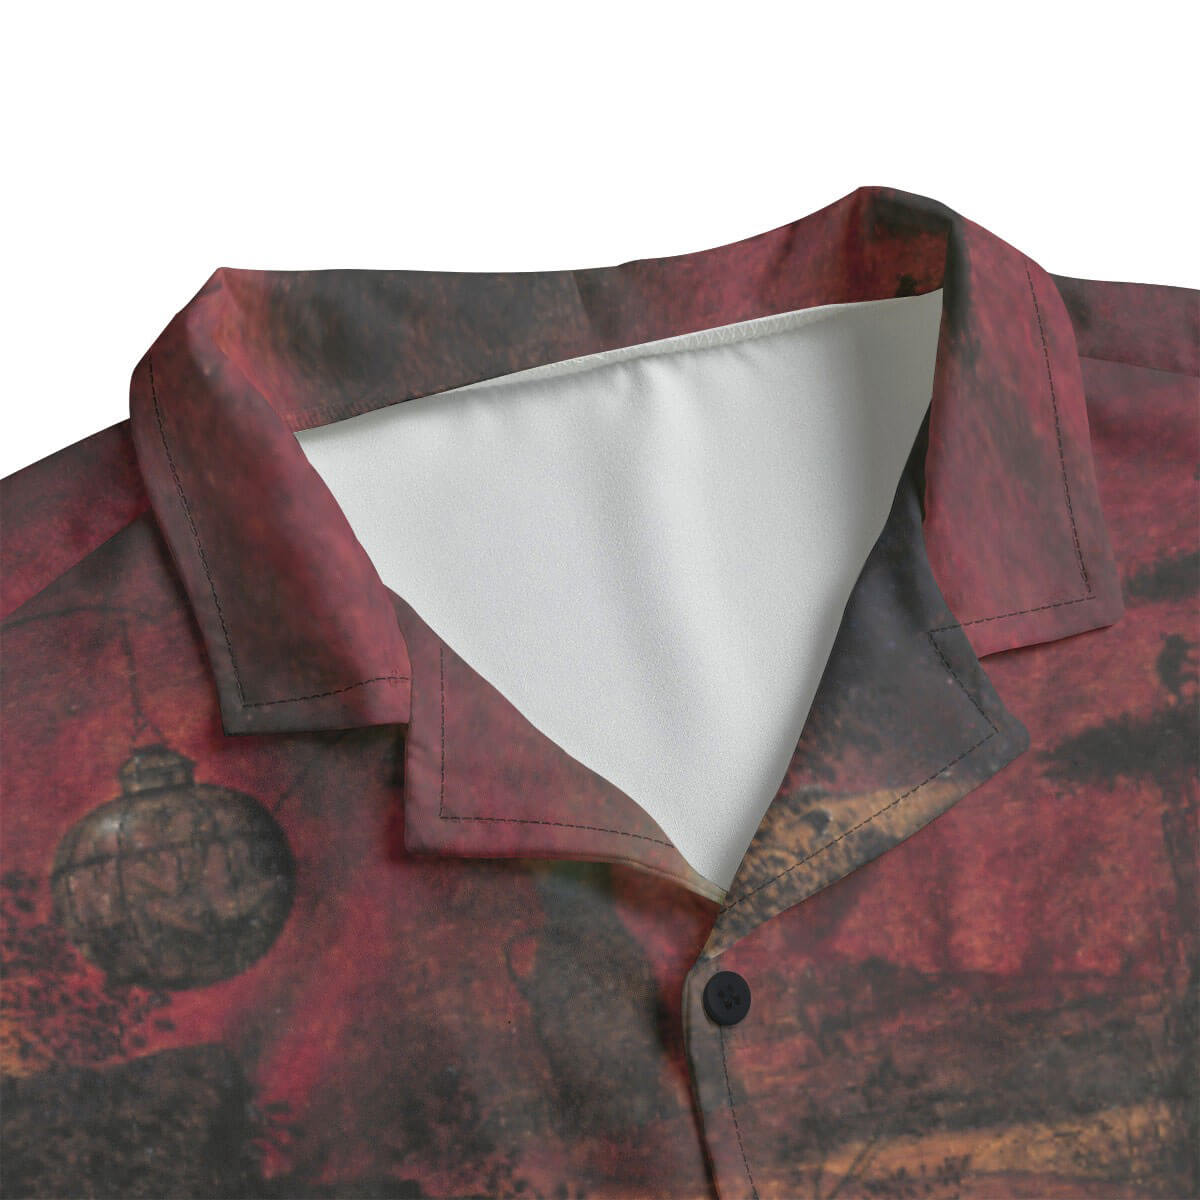 Renaissance-inspired Hawaiian shirt with Bruegel's Dulle Griet artwork